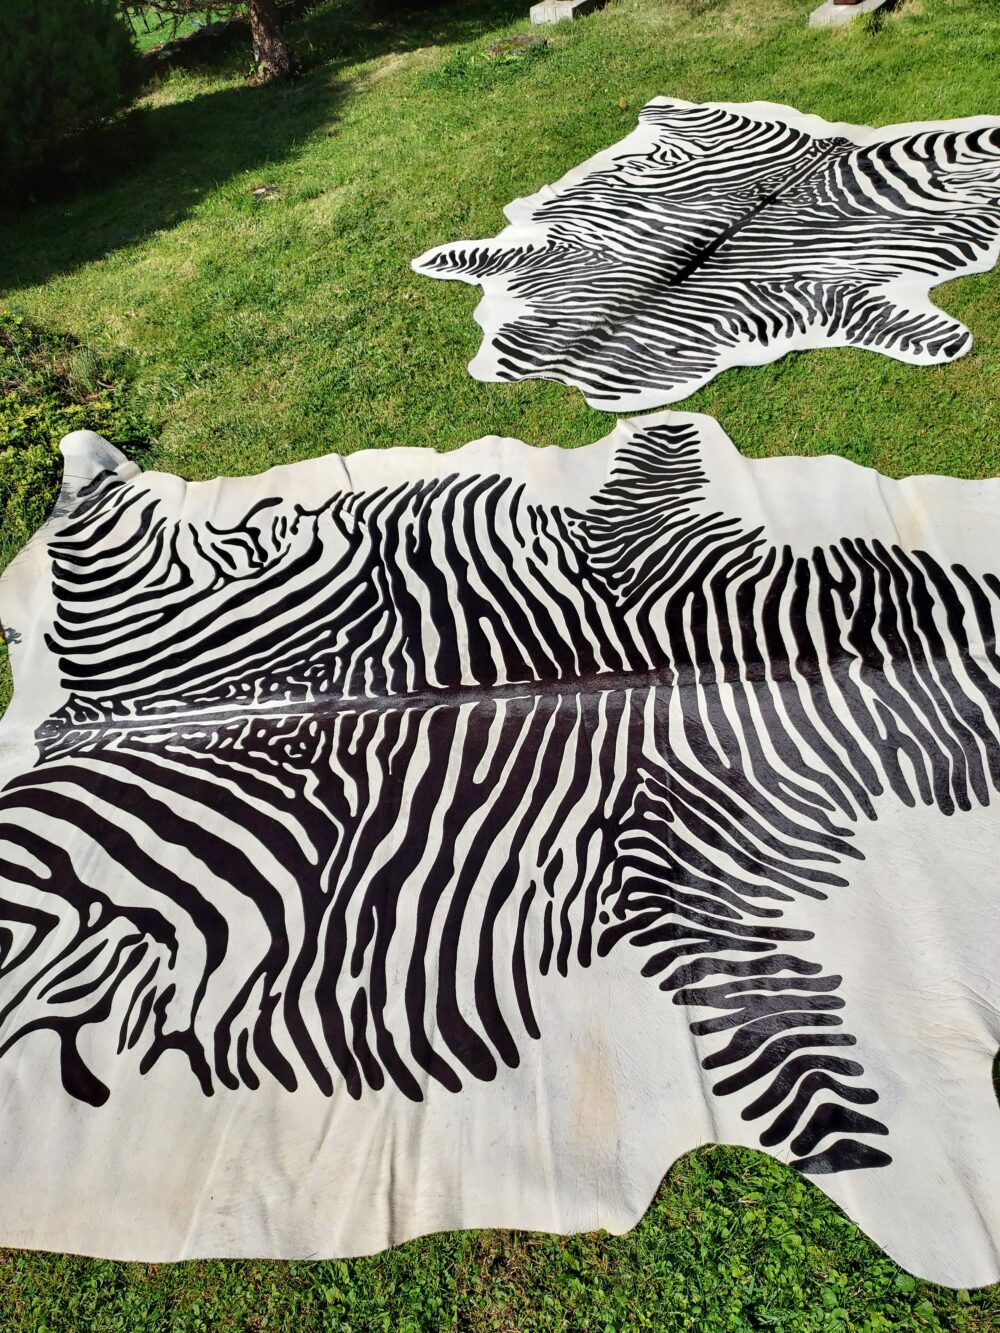 Zebra Leather Natural Zebra Leather Cattle Leather Zebra Pattern Decorative skins Producent owczych skór dekoracyjnych | Tannery Sheepskin | KalSkór 8